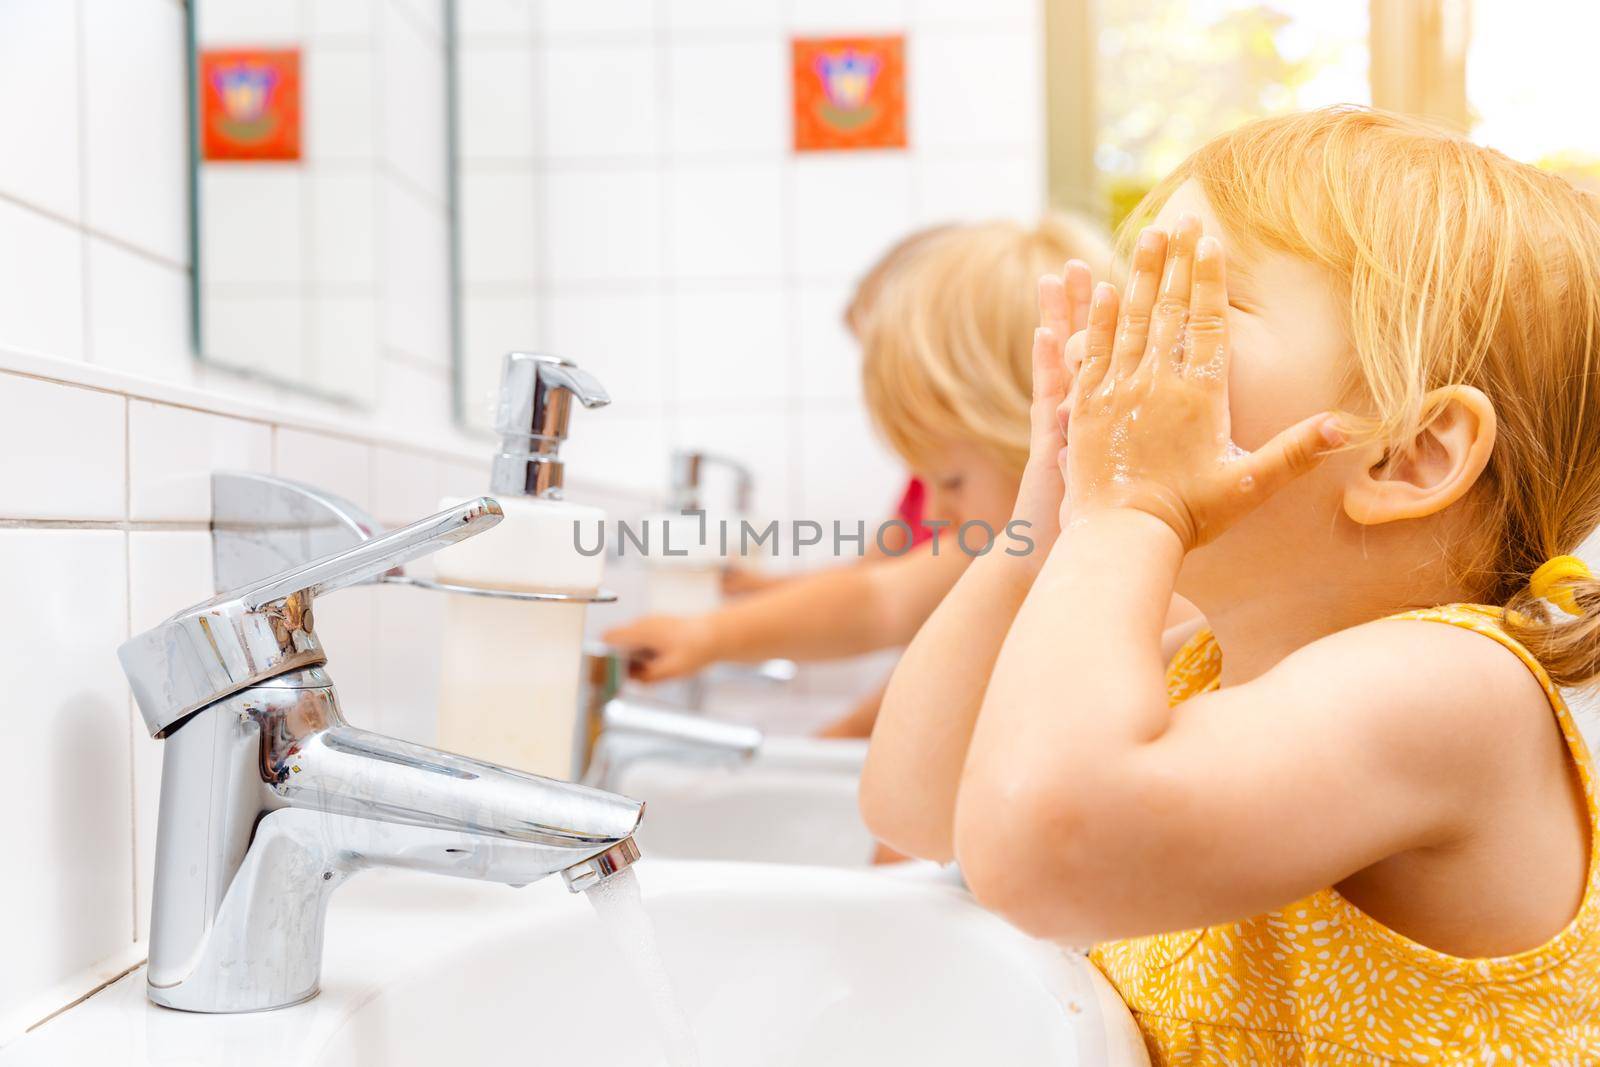 Child in kindergarten washing her hands by Kzenon